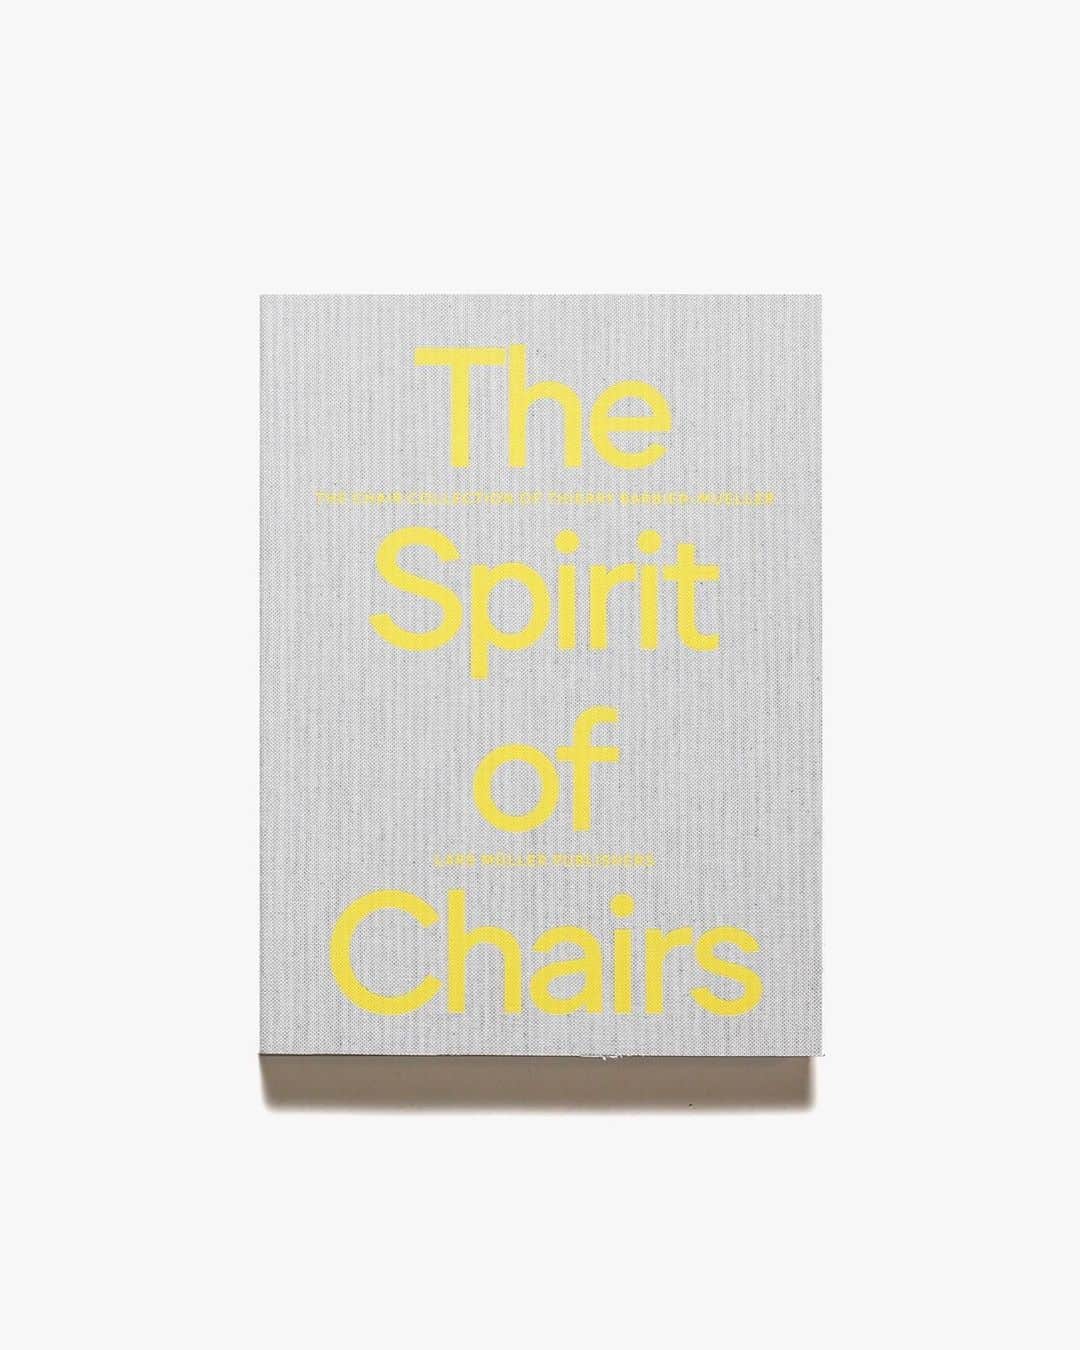 nostos booksさんのインスタグラム写真 - (nostos booksInstagram)「本日は「椅子」にまつわる書籍をまとめてご紹介。サイズ、素材、造形、色彩。これほどまでに自由で、作り手の個性が現れる椅子という家具。人の身体を最もコンパクトに受け止める身近な存在という点で、使う側の嗜好も現れやすいかもしれませんね。今回ご紹介するのは、 家具のなかでもとにかく椅子が好きで好きで...そんな方におすすめしたい10冊。  オンラインストアへは商品タグをタップ◯ 　 入荷本からおすすめ10選  ----------  1冊目 『Hans J. Wegner: Just One Good Chair』 デンマークの家具デザイナー、ハンス・J・ウェグナーの生誕100周年を記念して刊行された作品集。Yチェアやザ・チェアなどといった名作を手掛けたウェグナーの、展示会や制作風景の写真、スケッチなどを多数収録。   ----------  2冊目 『220℃ Virus Monobloc: The Infamous Chair』 世界中の庭やスナックバー、キャンプ場などで見かけるスタッキング可能なプラスチック製の椅子「モノブロックチェア」をテーマにしたデザインプロジェクトを書籍化。フィリップ・スタルク、ジェルシー・シーモアら著名デザイナーによる皮肉とユーモアあふれるオマージュを収録し、ありふれた椅子の可能性を引き出す1冊。  ----------  3冊目 『A Passion for Jean Prouve』 家具、金属工芸、建築の分野で活躍したデザイナー、ジャン・プルーヴェのビジュアル資料集。プルーヴェの熱心なコレクターであるローレンス＆パトリック・セガン夫妻の所蔵品を中心に紹介している。また、現代美術とプルーヴェの関連性の考察、メトロポールハウスやアームチェアなどの試作品や希少品の資料なども収録。   ----------  4冊目 『Spirit of Chairs:』 デザインやアートを目的とした美しくユニークな形をした椅子を集めたビジュアルブック。日常生活で使われる椅子ではなく、彫刻としての可能性を追求する。ロン・アラッド、ジャスパー・モリソン、ブルーノ・ムナーリ、倉俣史朗ら、様々なアーティストの作品を紹介。  ----------  5冊目 『Poul Kjaerholm: Furniture Architect』 デンマークにおける家具デザイナーの父と称されるカイ・クリスチャンセンの作品集。92歳になる現在でも1950年代と同じ手法をとりながら世界中で愛される家具を発表し続けている。クリスチャンセンの70年以上に及ぶキャリアと豊富な作品を紹介するとともに、彼自身の人生や経験、そしてビジョンについて語っている。  ----------  6冊目 『Kai Kristiansen: An Industrious Designer』 女優、映画監督、そして写真家として活躍したレニ・リーフェンシュタール。アフリカのヌバ族を被写体に、レニが10年間にわたり撮影し続けた写真作品を、石岡瑛子が構成。失われつつある文化をテキストと写真で記録した作品集。  ----------  7冊目 『HAY』 世界中で愛されるデンマークのインテリアブランド「HAY」の、創業20周年を記念して発行されたビジュアルブック。ブランドの起源、店舗の空間表現などを4つの章で構成。鮮やかな色の日用品やインテリアを、手の届きやすい価格帯、機能性にて展開を続ける「HAY」のデザインの世界を知れる一冊。  ----------  8冊目 『Mario Bellini』 イタリアの建築家でありデザイナー、マリオ・ベリーニの資料集。オリベッティ、カッシーナ、B&Bイタリア、ヴィトラ、アルテミデなどのために、エレガントで劇的、そしてしばしば詩的なデザインを行ったことで知られるベリーニ。その家具、機械、オブジェといった幅広い作品の数々を豊富な図版で紹介。  ----------  9冊目 『Living with Charlotte Perriand:』 フランスの建築家、シャルロット・ペリアンの作品集。椅子、テーブル、本棚など、氏の手掛けた作品を、生活空間のなかで使用されている様子とともに味わうことができる一冊。寄稿文では氏の人生の歩みや、芸術家やデザイナーらとのコラボレーションの軌跡なども解説。   ----------  10冊目 『Hammer ＆ Nail』 イタリアの先鋭的なデザイナー、エンツォ・マリの著作『Autoprogettazione』に触発された、シンプルで美しい手作り家具のガイドブック。各種椅子、テーブル、ソファ、ベッド、キャビネットなど、簡単な説明と図解で、家具の接合部の基本的な作り方や、板が割れないようにする方法、のこぎりできれいに切る方法、表面処理のアイデアなどを紹介している。  ----------------------  店舗情報はこちら @nostosbooks  ----------------------  #hansjwegner #ハンスjウェグナー #nostosbooks #ノストスブックス #祖師ヶ谷大蔵 #砧」6月4日 7時31分 - nostosbooks